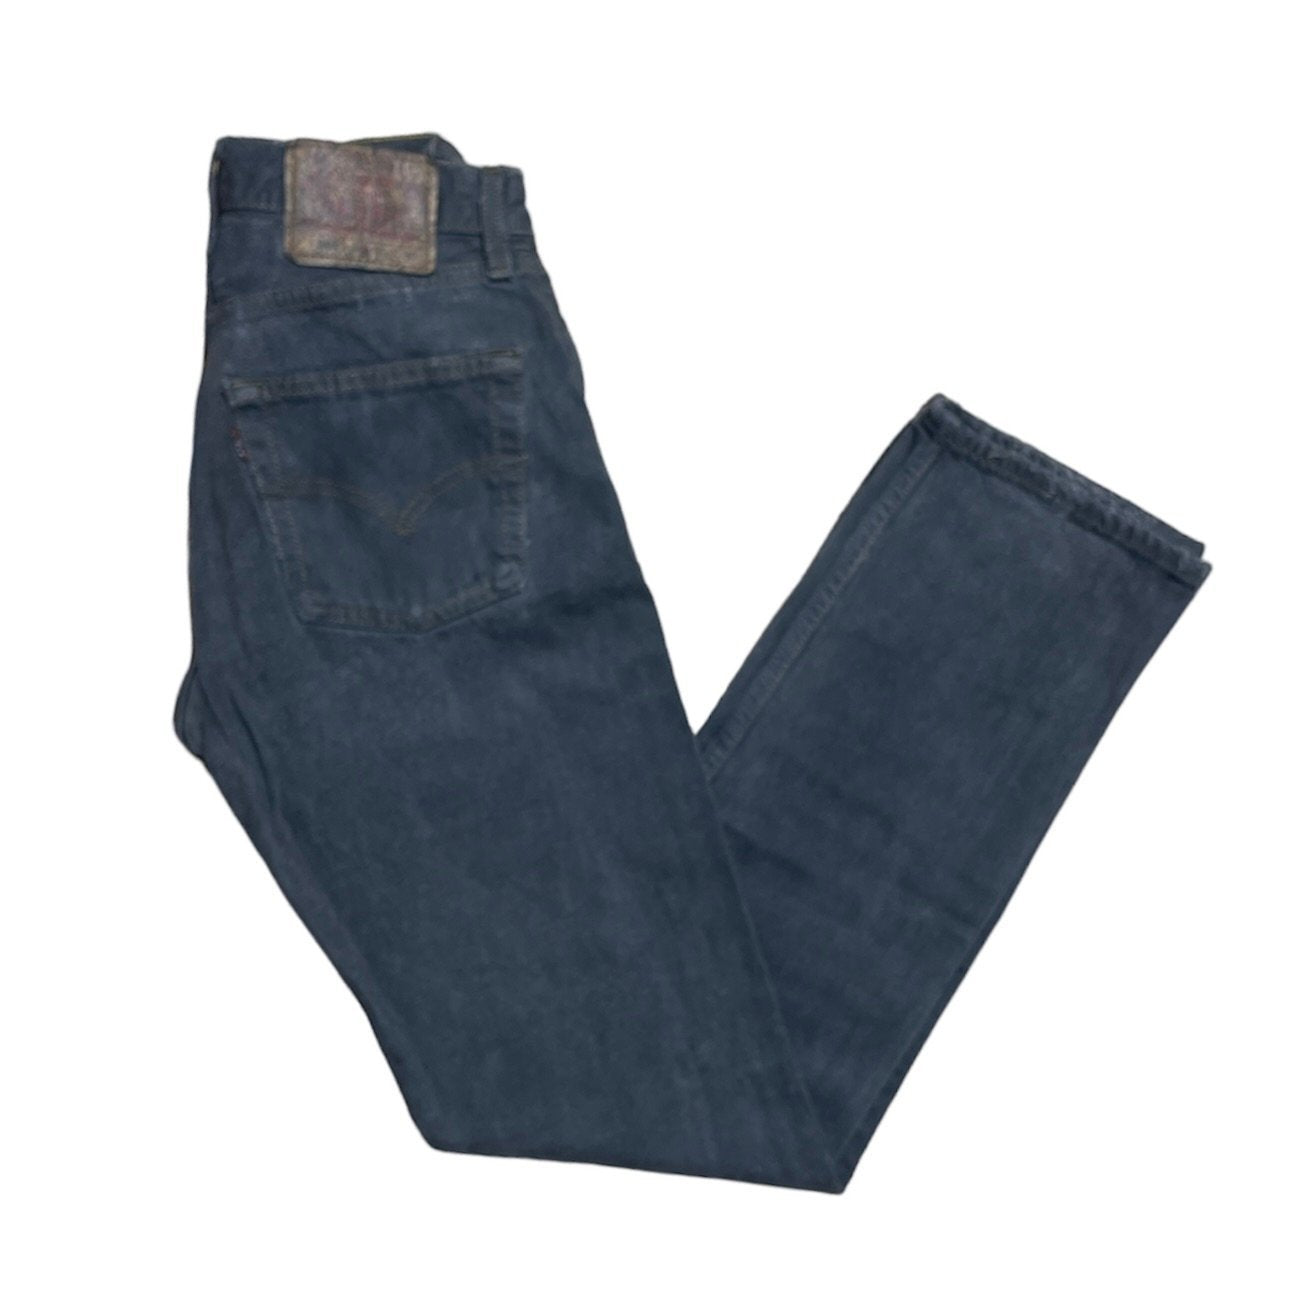 Vintage Levis 501 Grey Jeans (W26/L30)